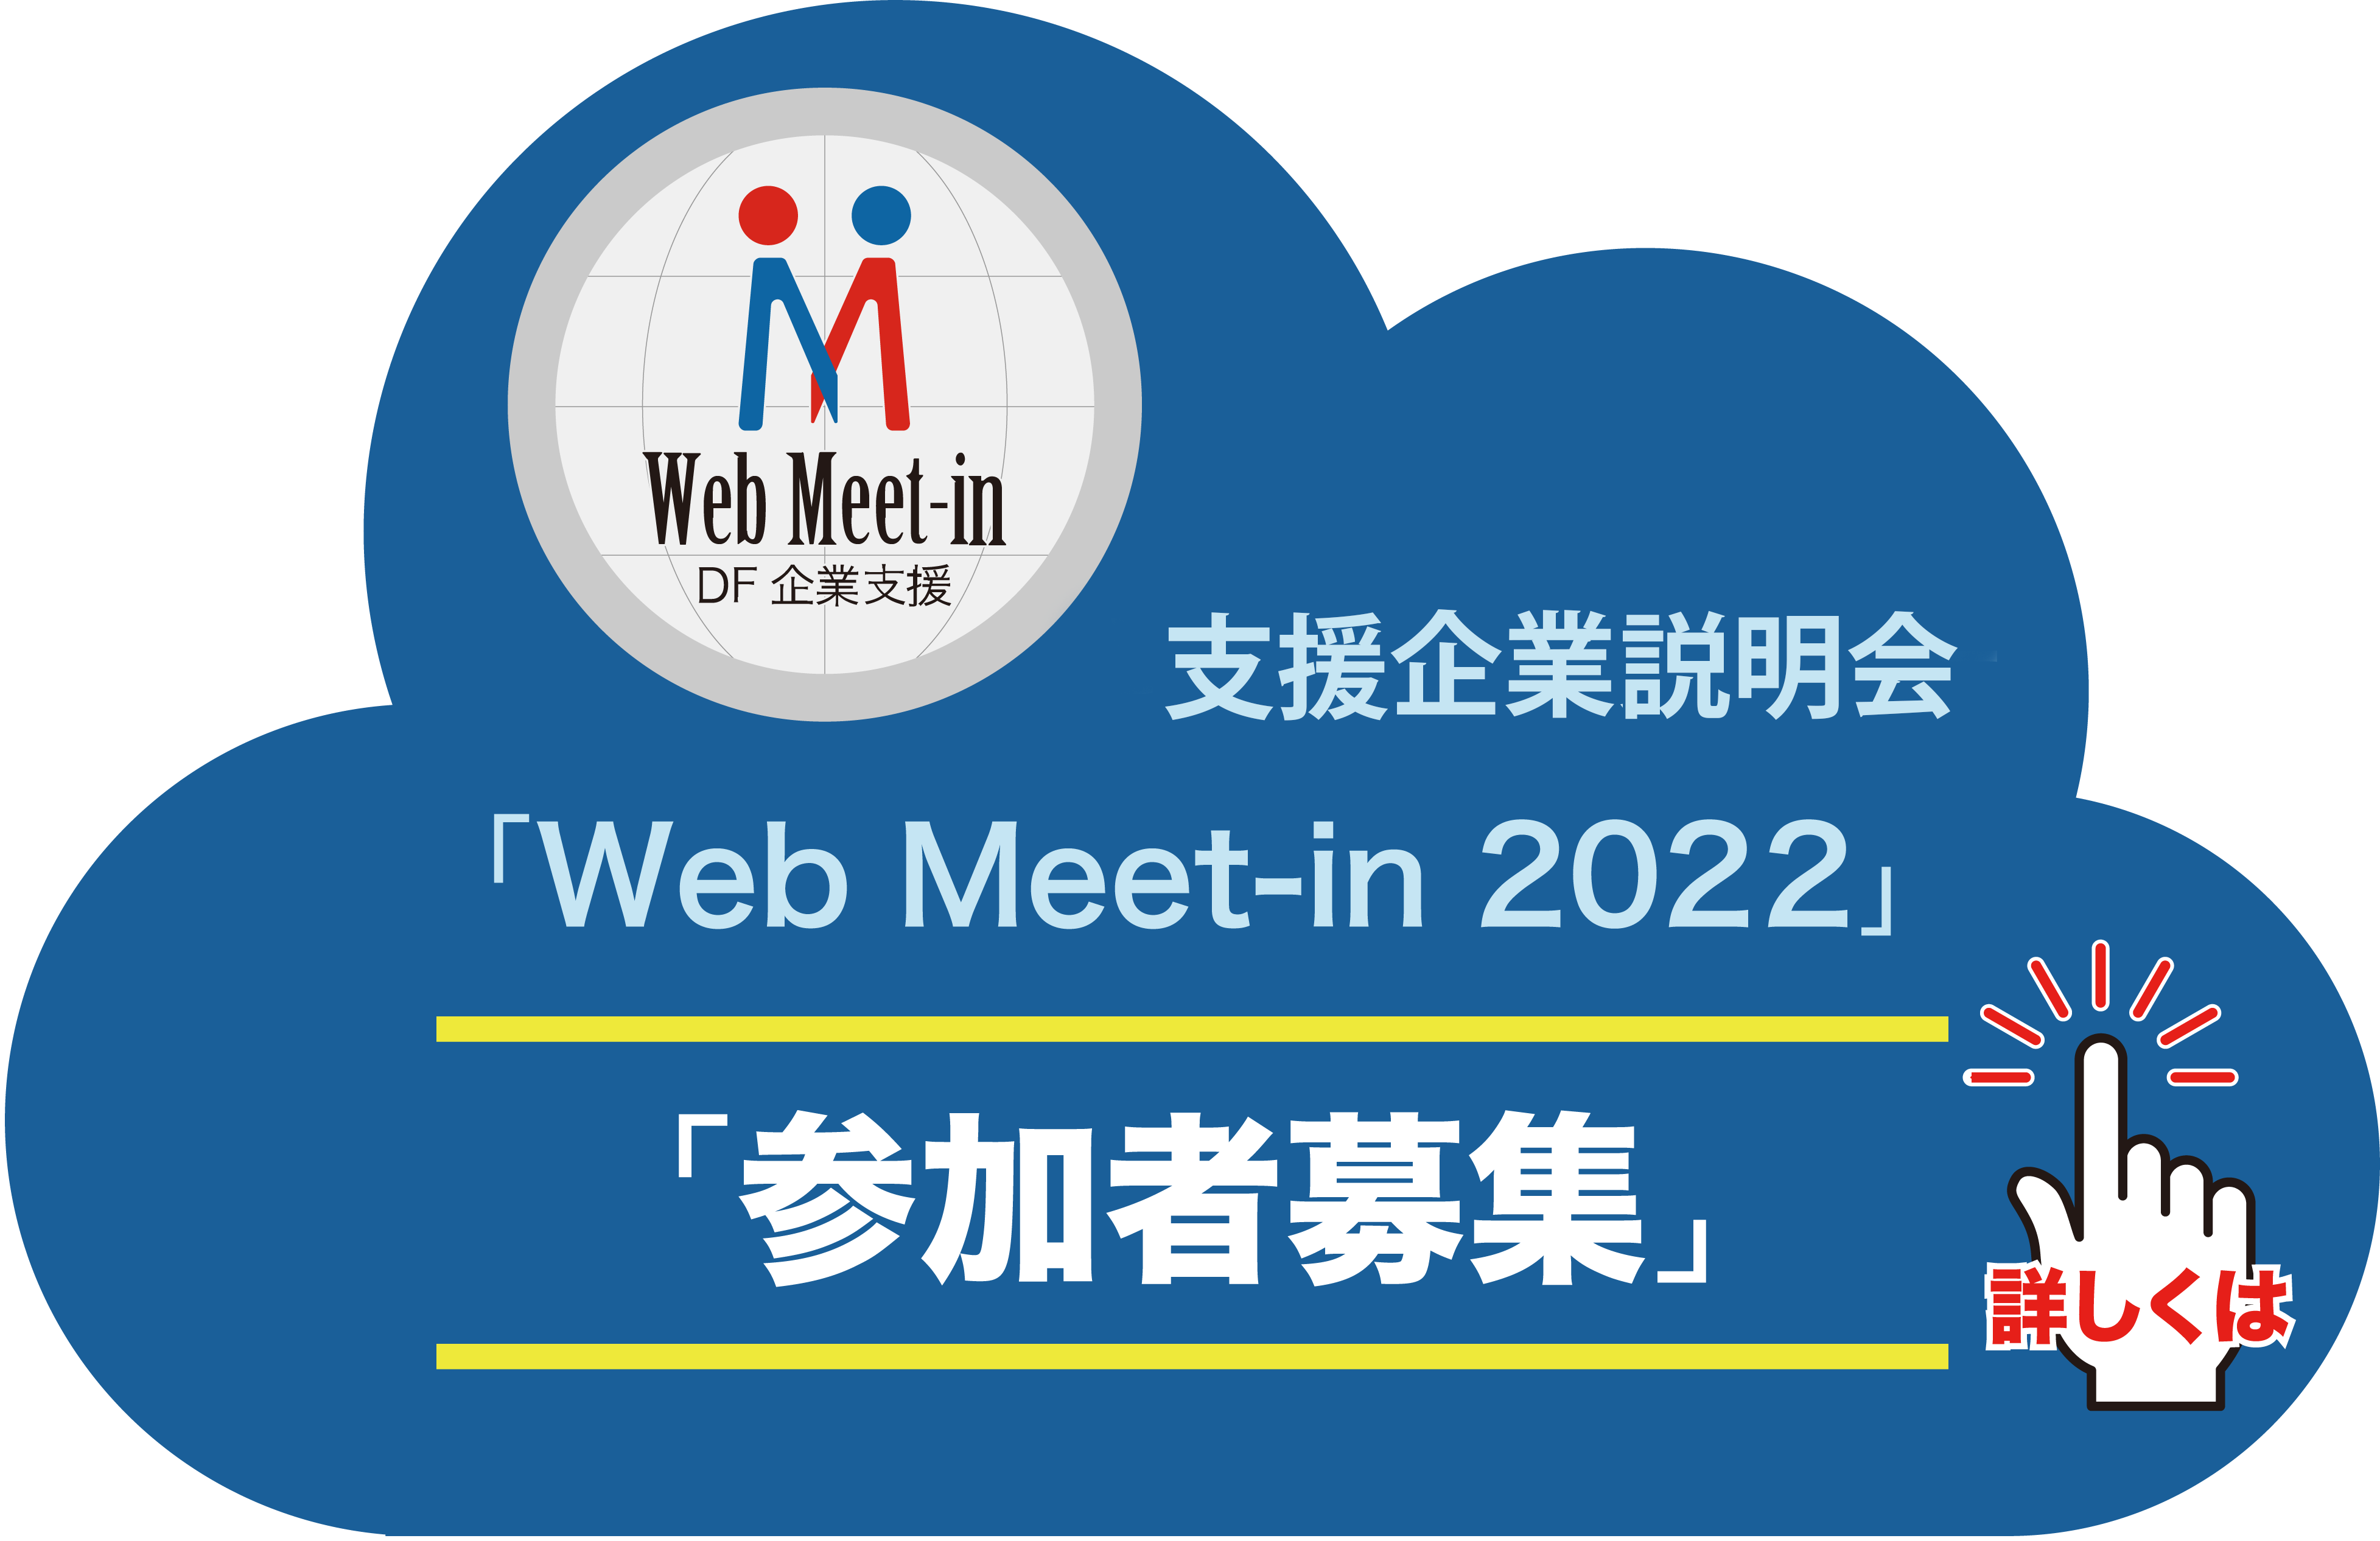 WebMeet-in